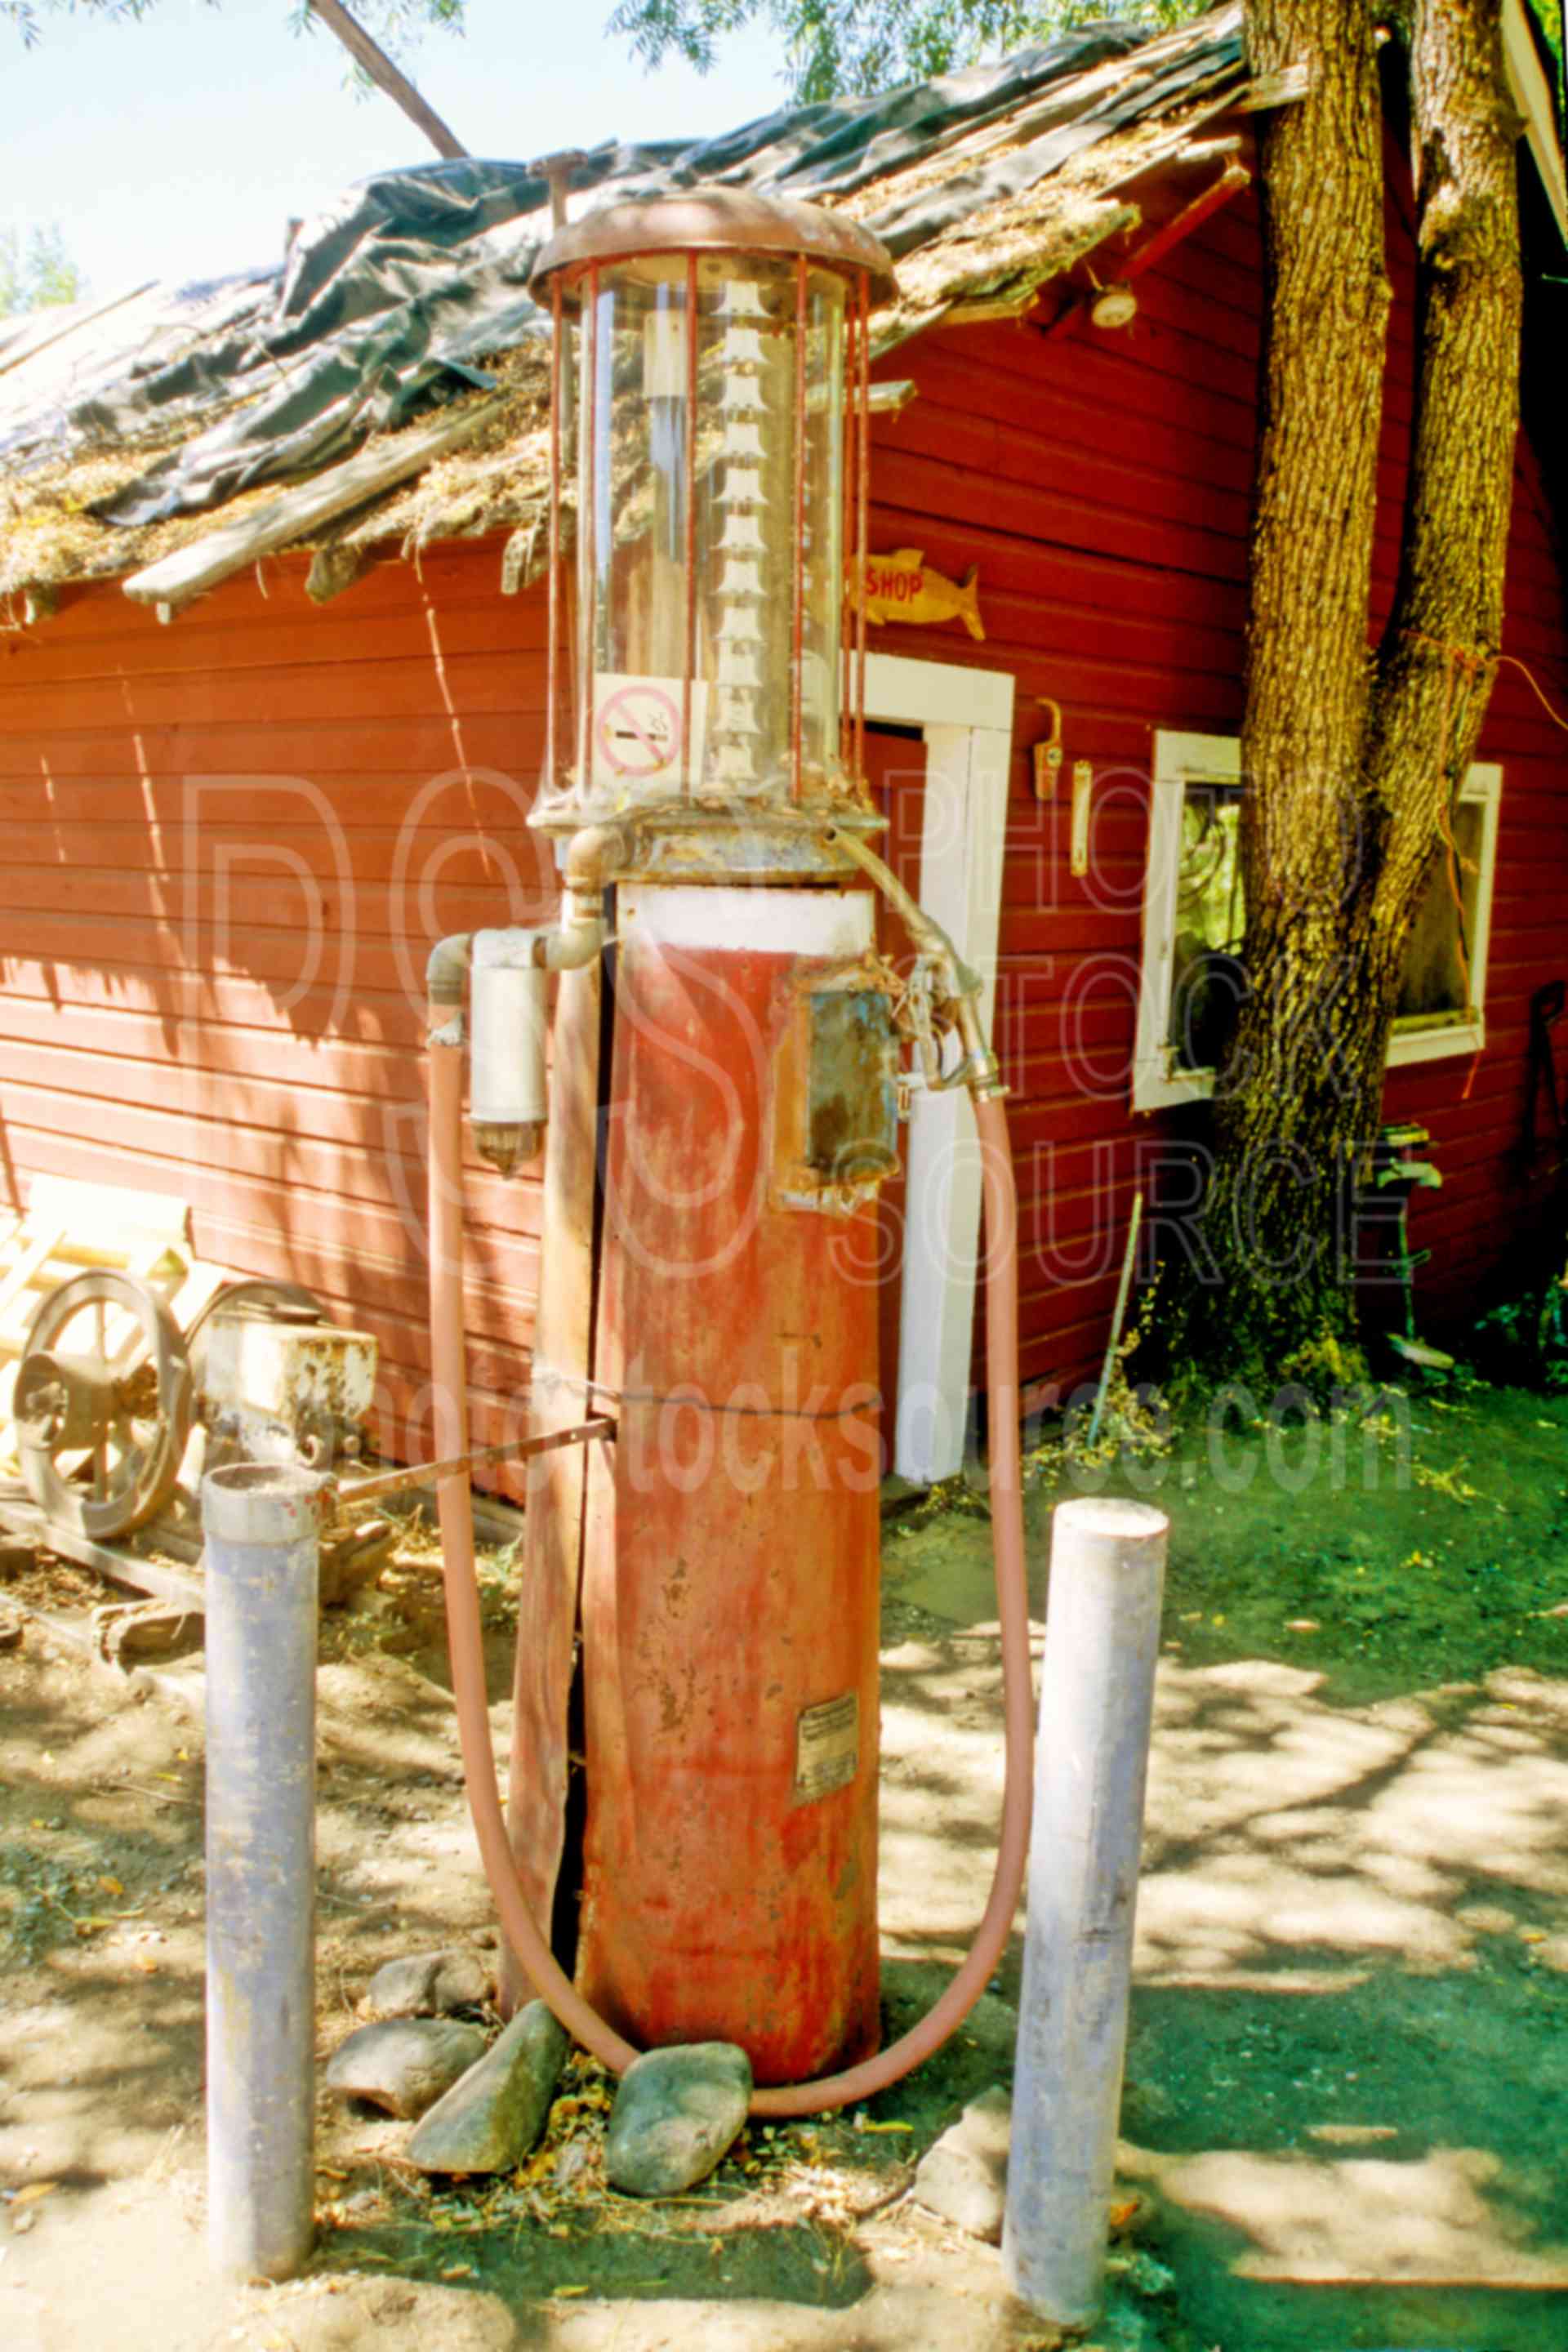 Old Gas Pump,gas pump,pump,us antiques,architecture